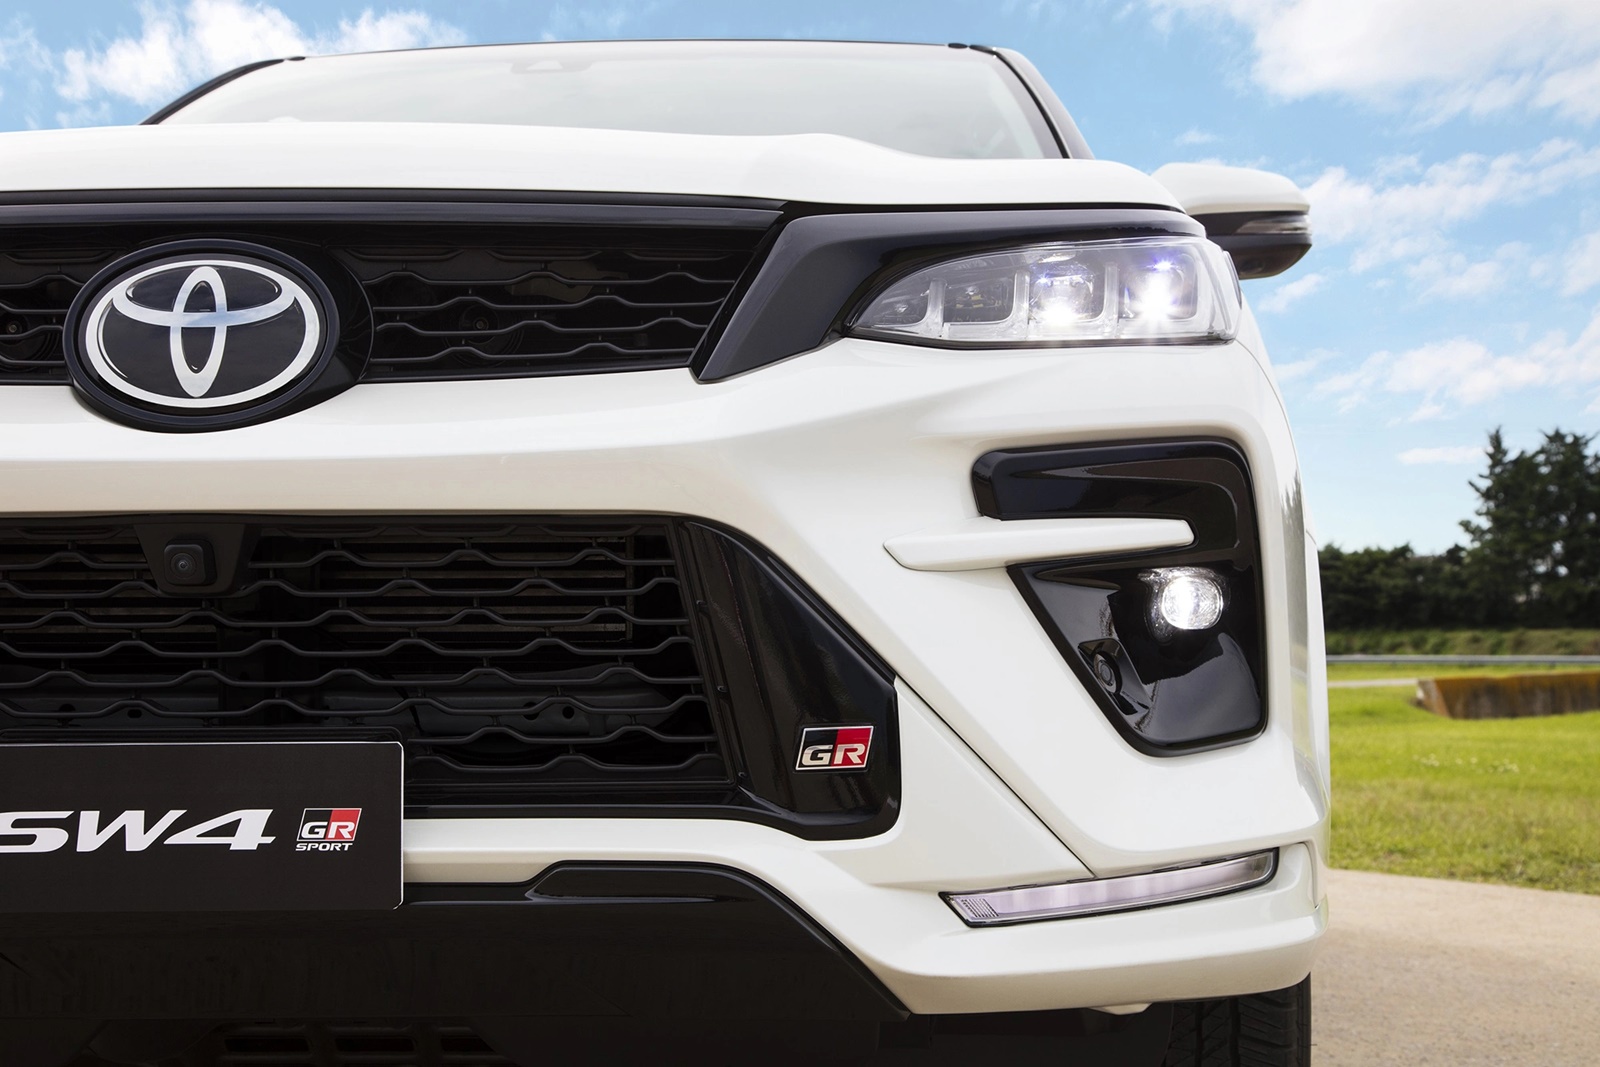 Toyota SW4 estreia com design esportivo e com motor mais potente; confira